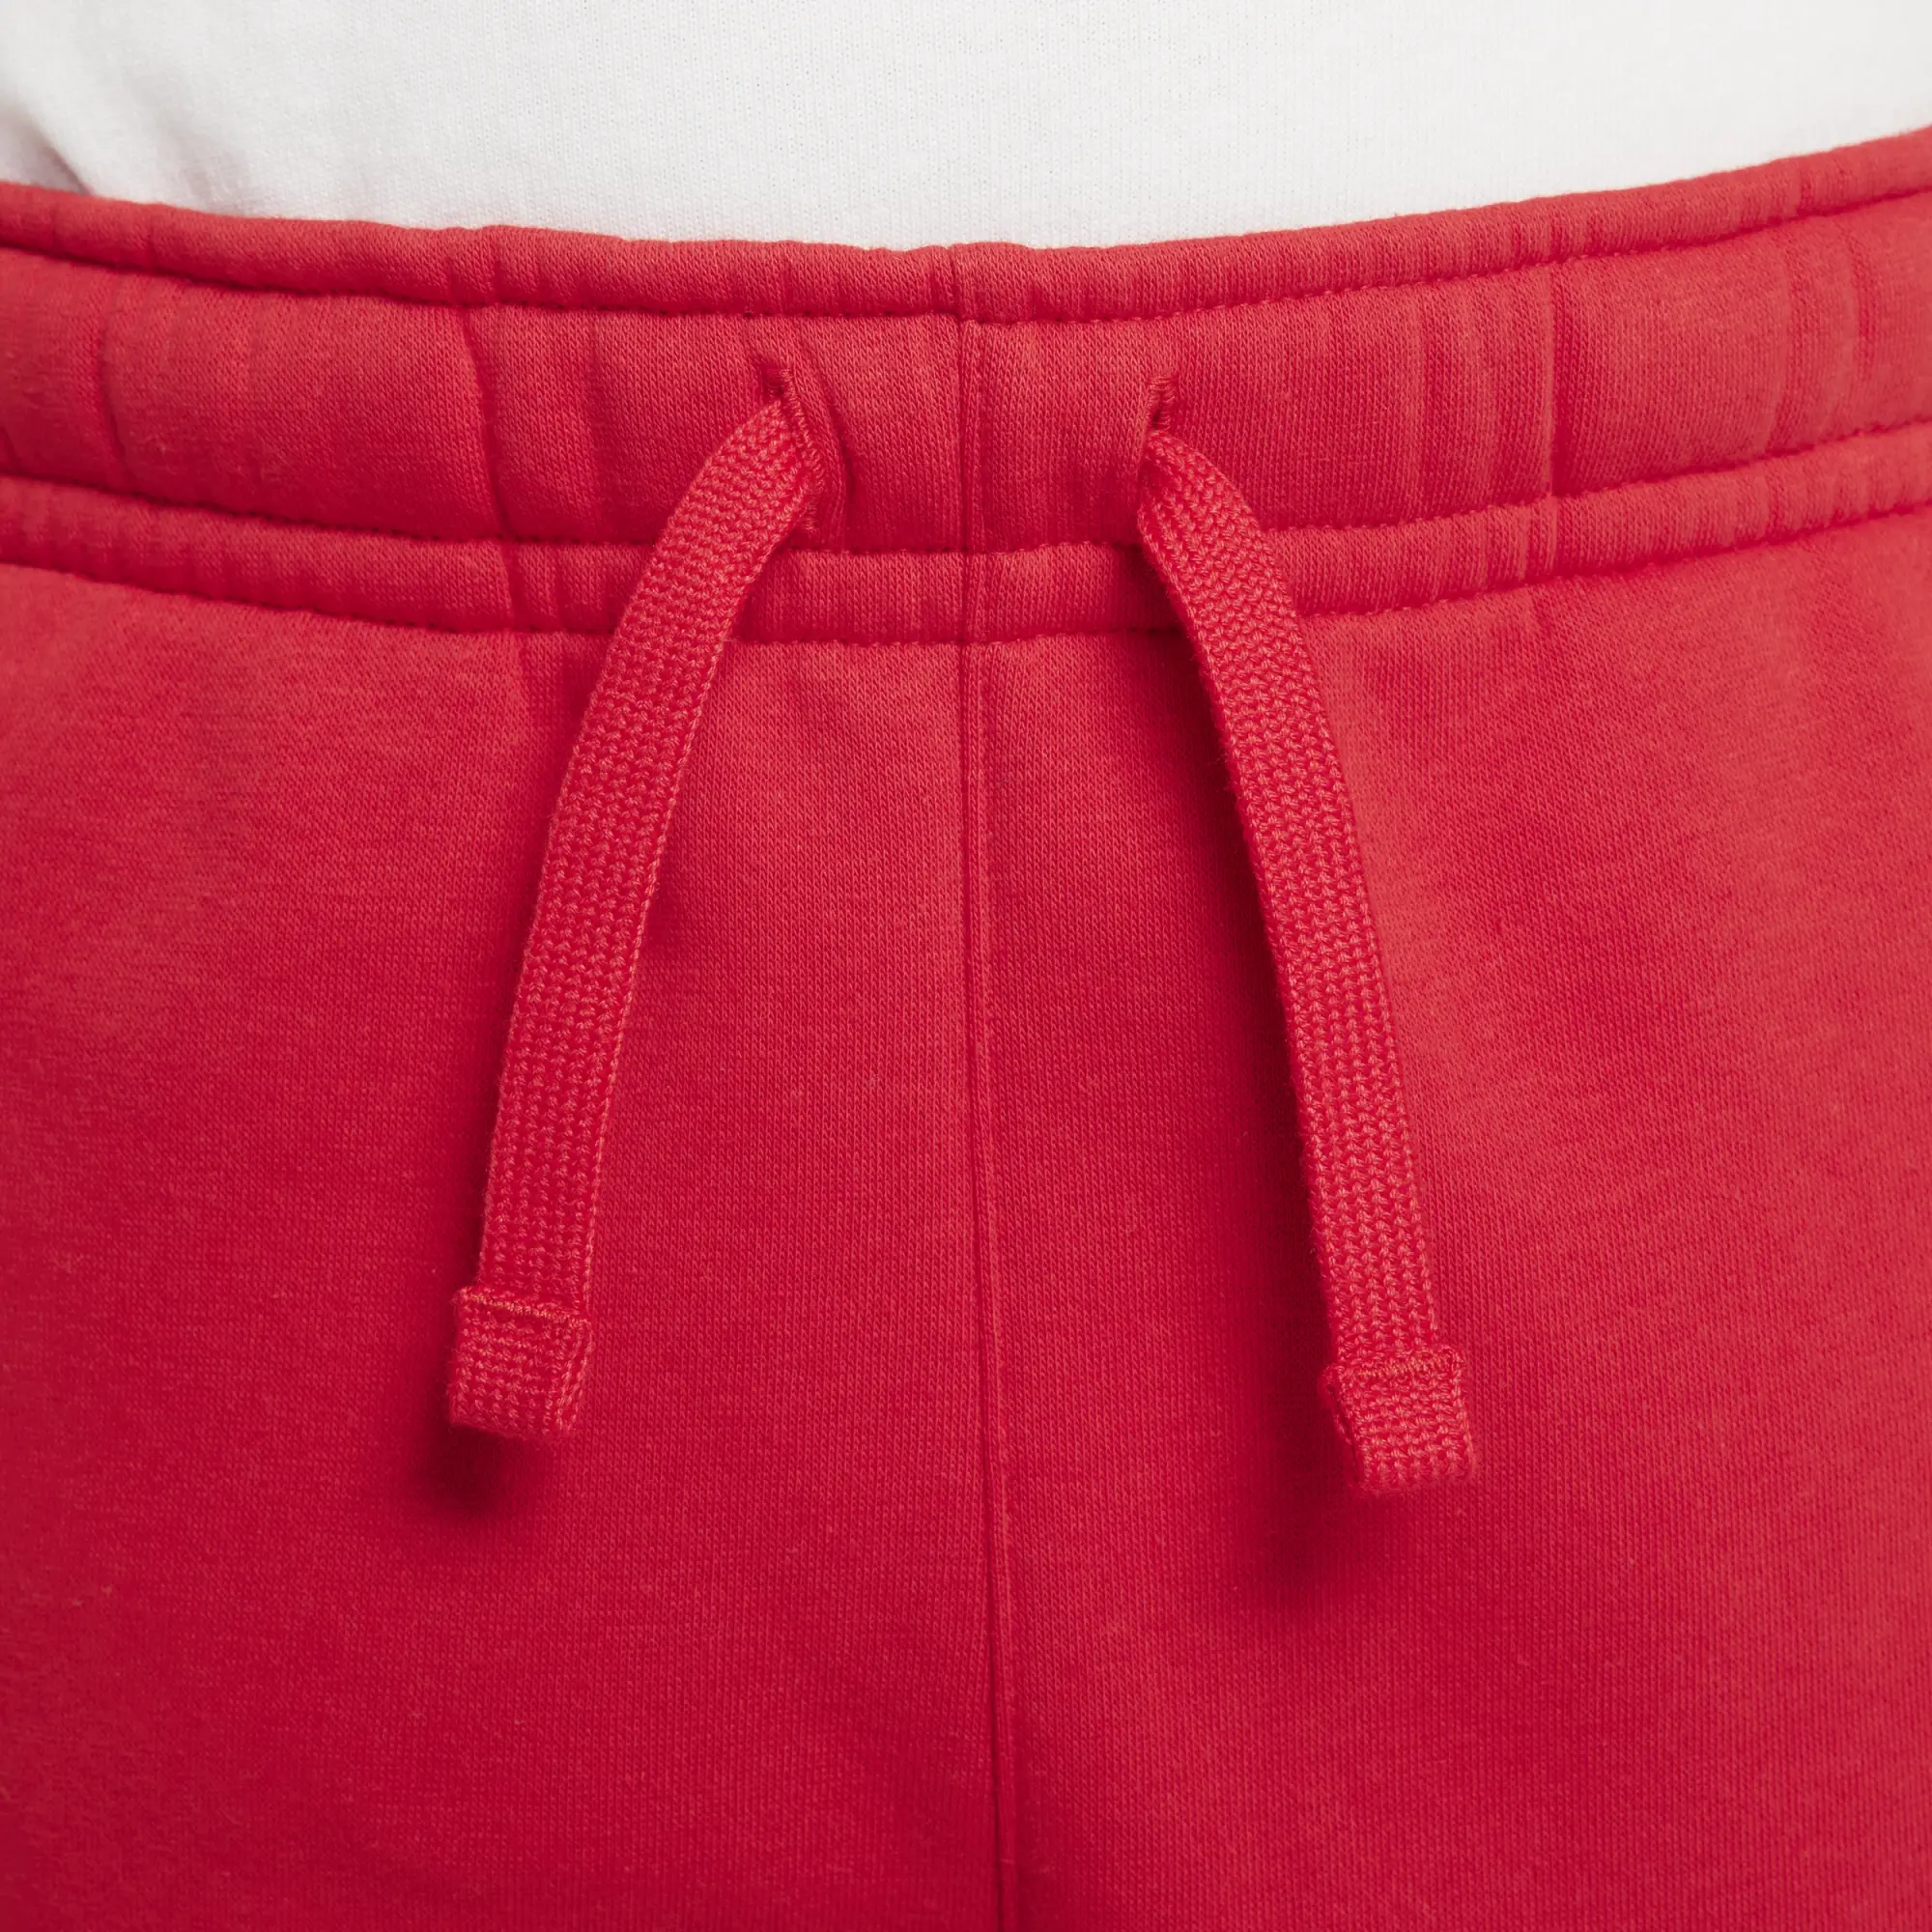 Nike Sportswear Older Kids' (Boys') Fleece Cargo Trousers - Red ...